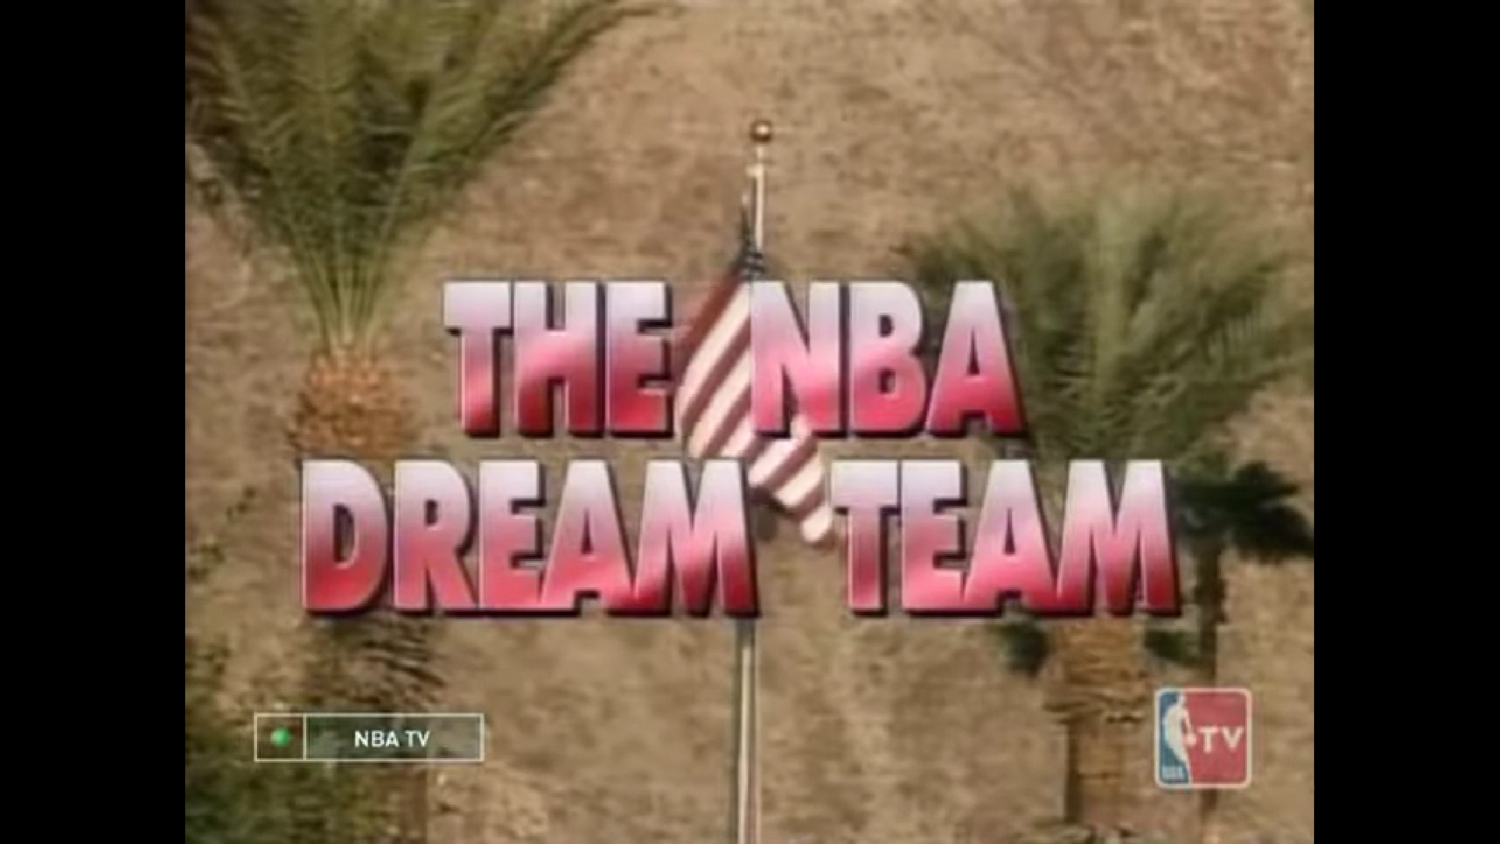 The NBA. Dream Team. Команда мечты 1992. Телеканал NBA TV